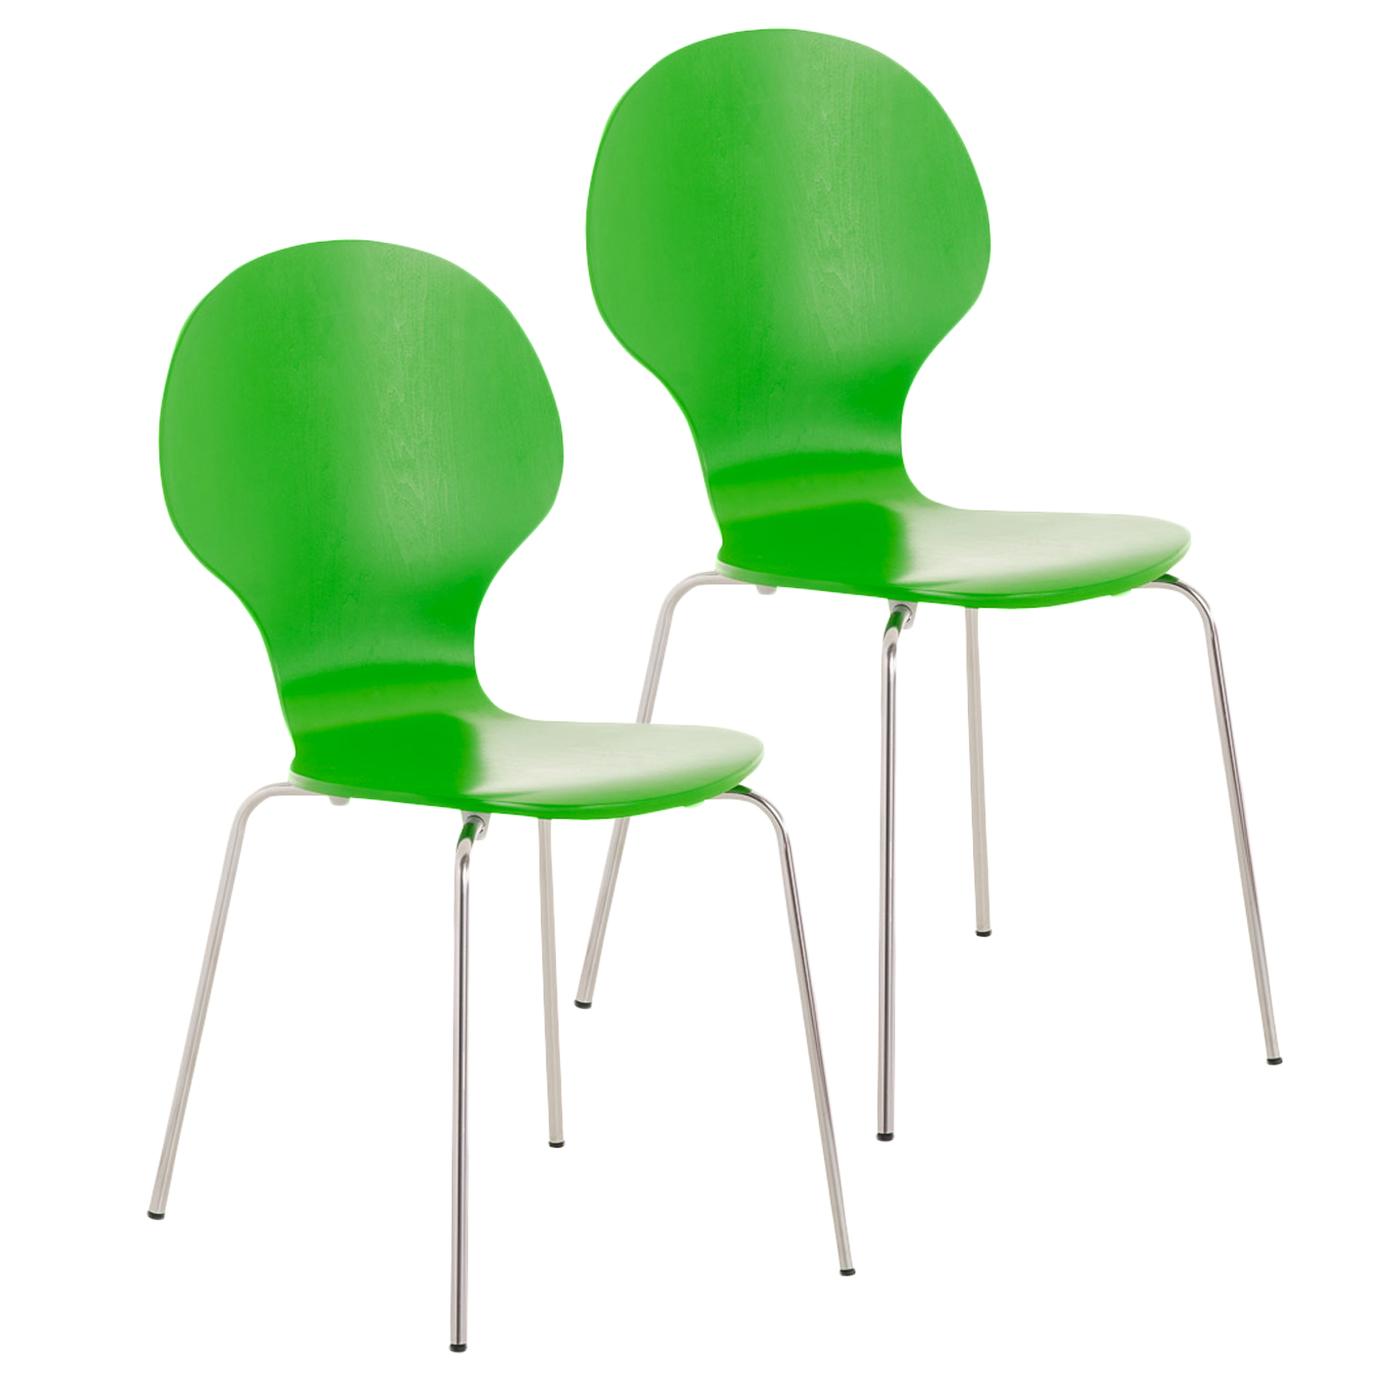 Lote 2 Cadeiras de Visita CARVALHO, Estrutura Metálica, Empilháveis, Em Cor Verde